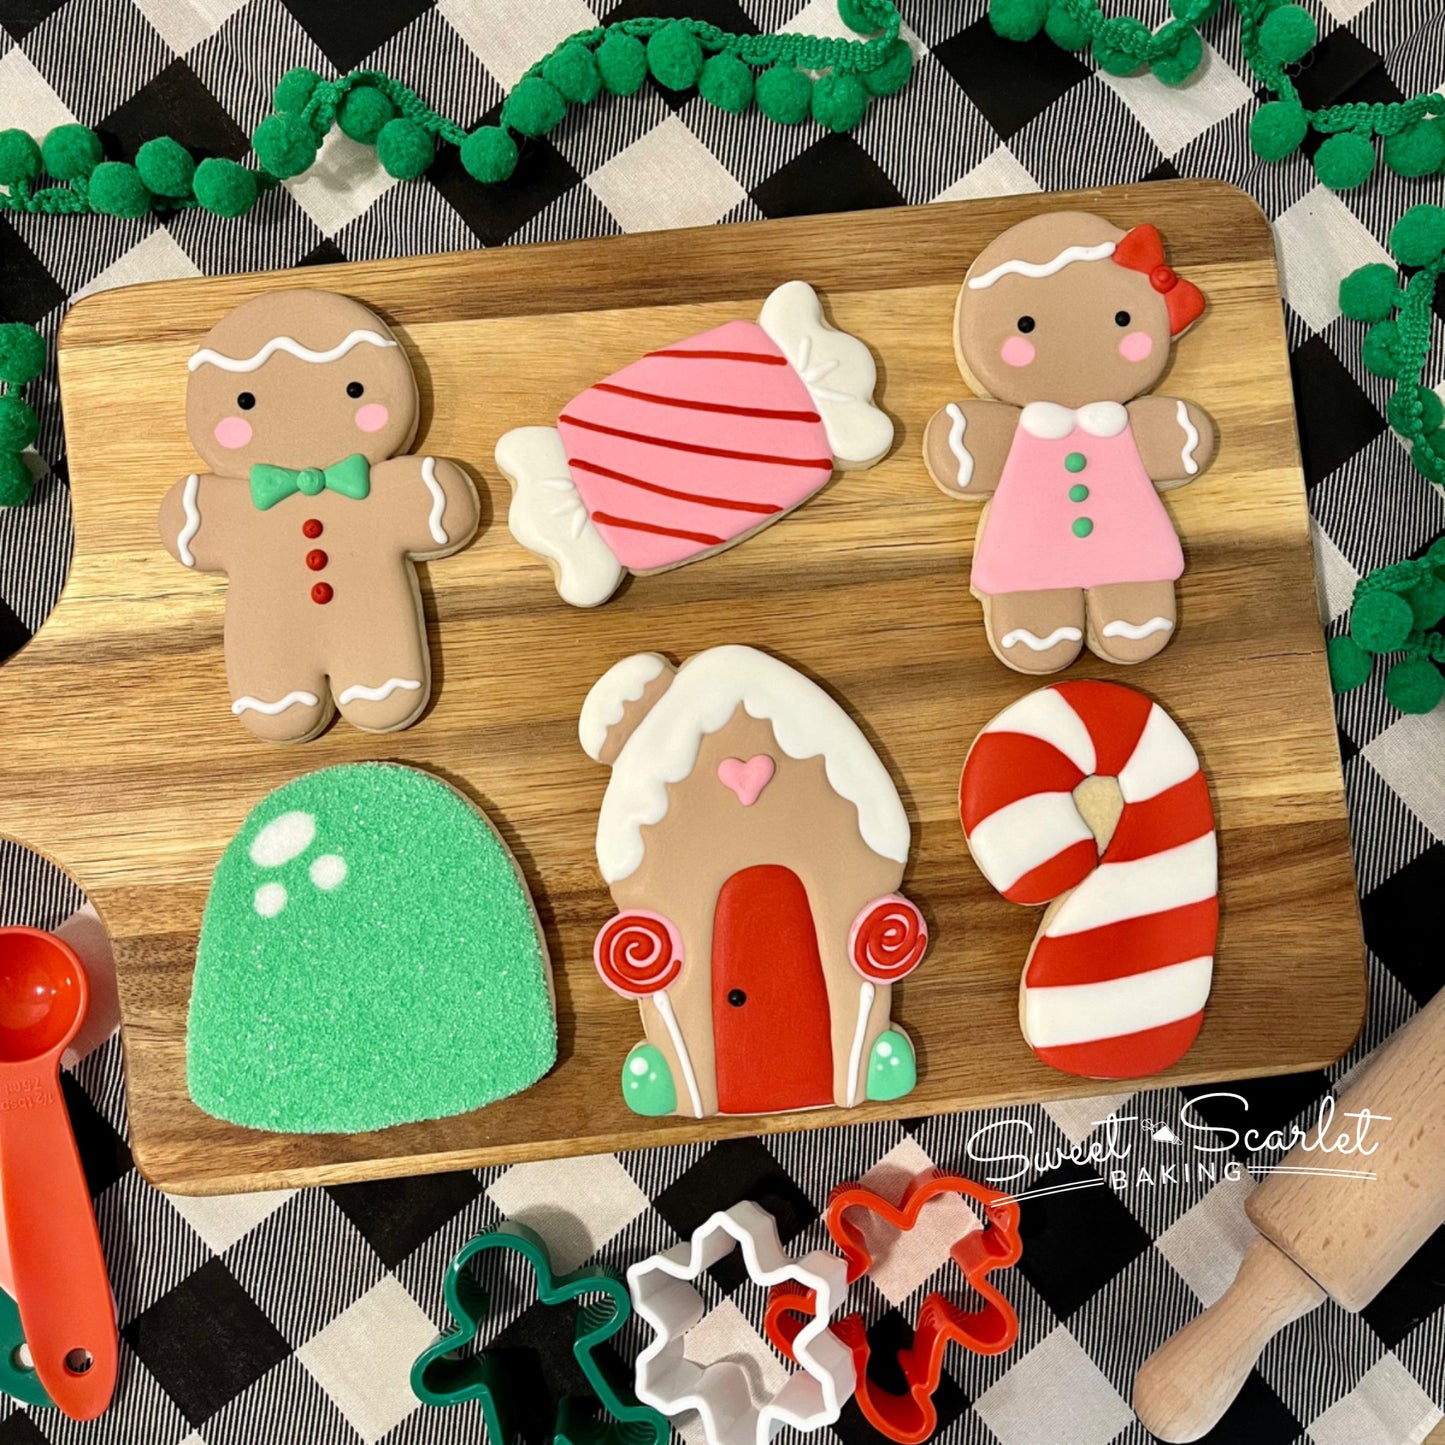 Gingerbread Adult Beginner Cookie Class - Sat 12/2 9:30 am